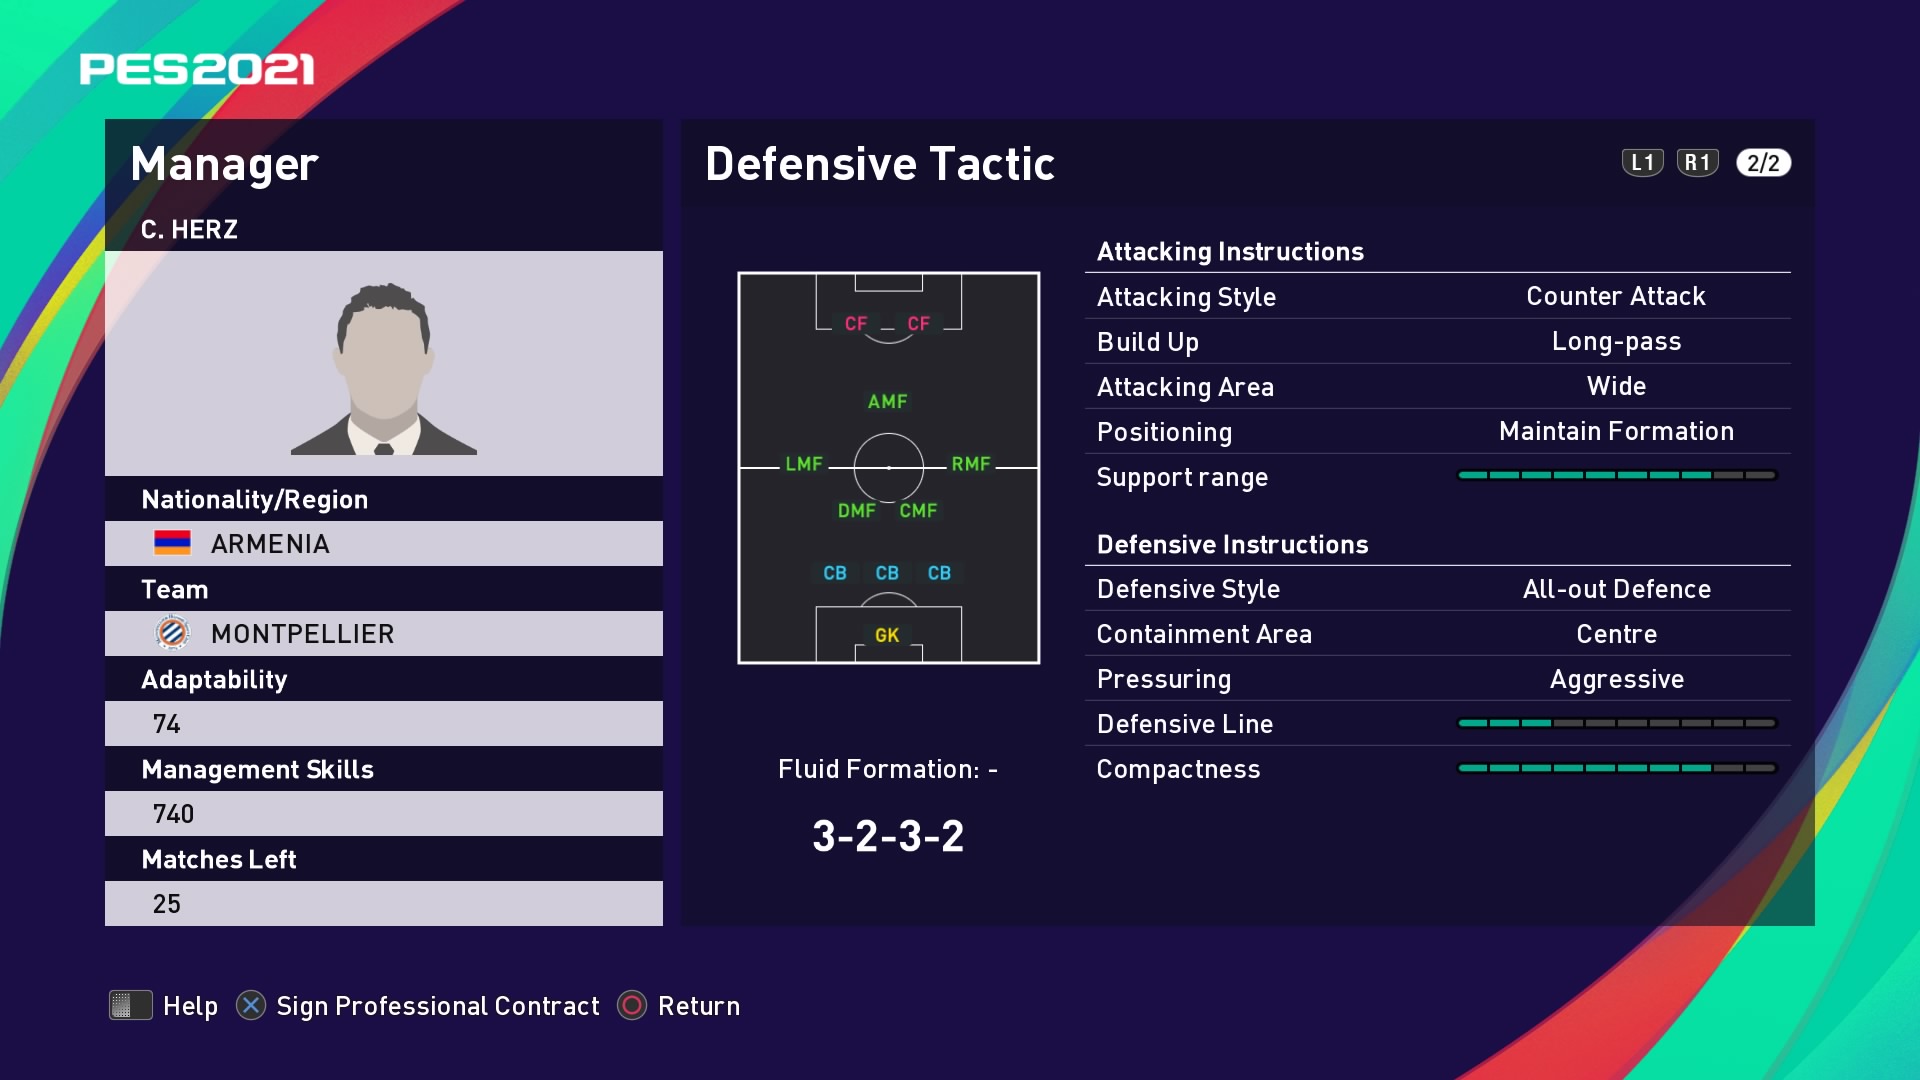 C. Herz (Michel Der Zakarian) Defensive Tactic in PES 2021 myClub